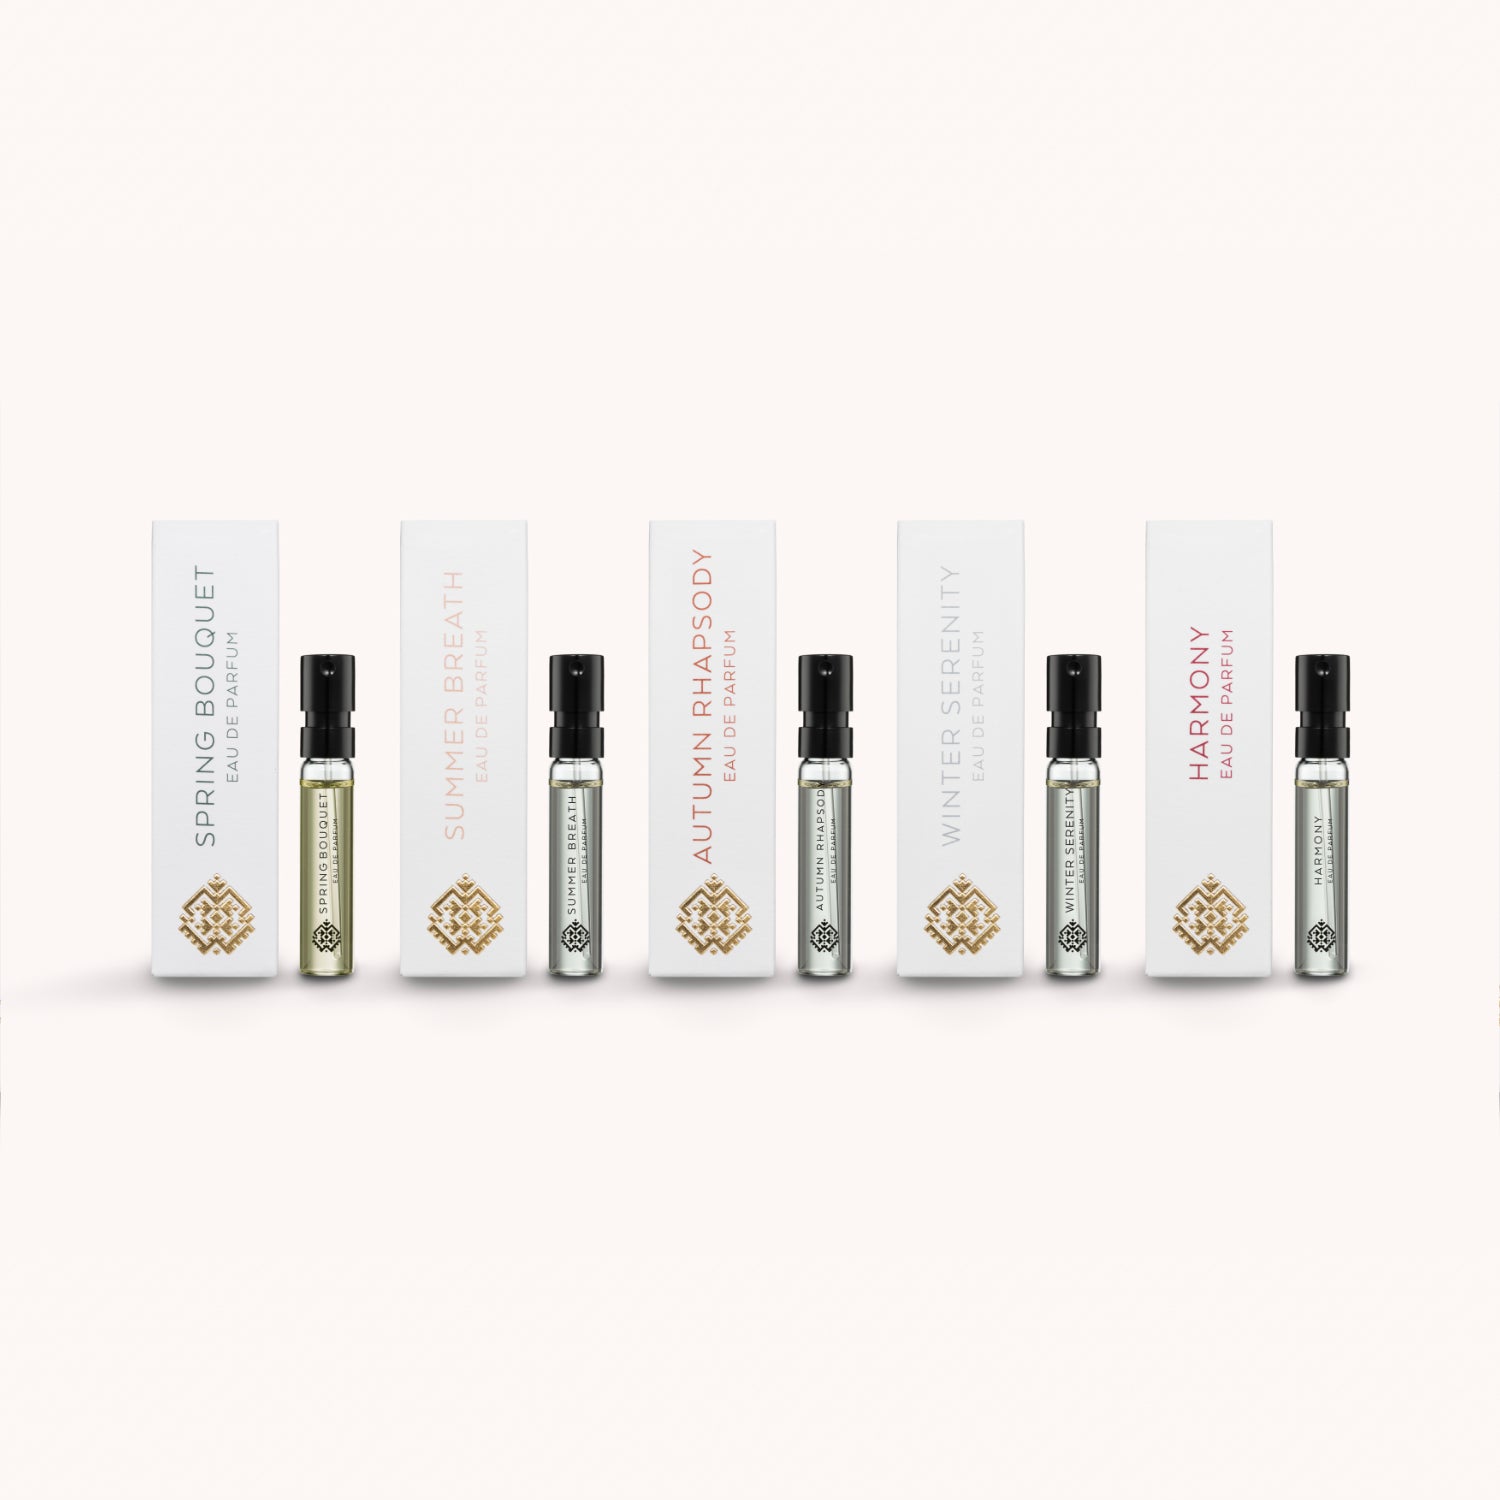 Discovery Set Eau De Parfum 5 x 2ml - Luxury Niche Unisex Perfumes For Men and Women